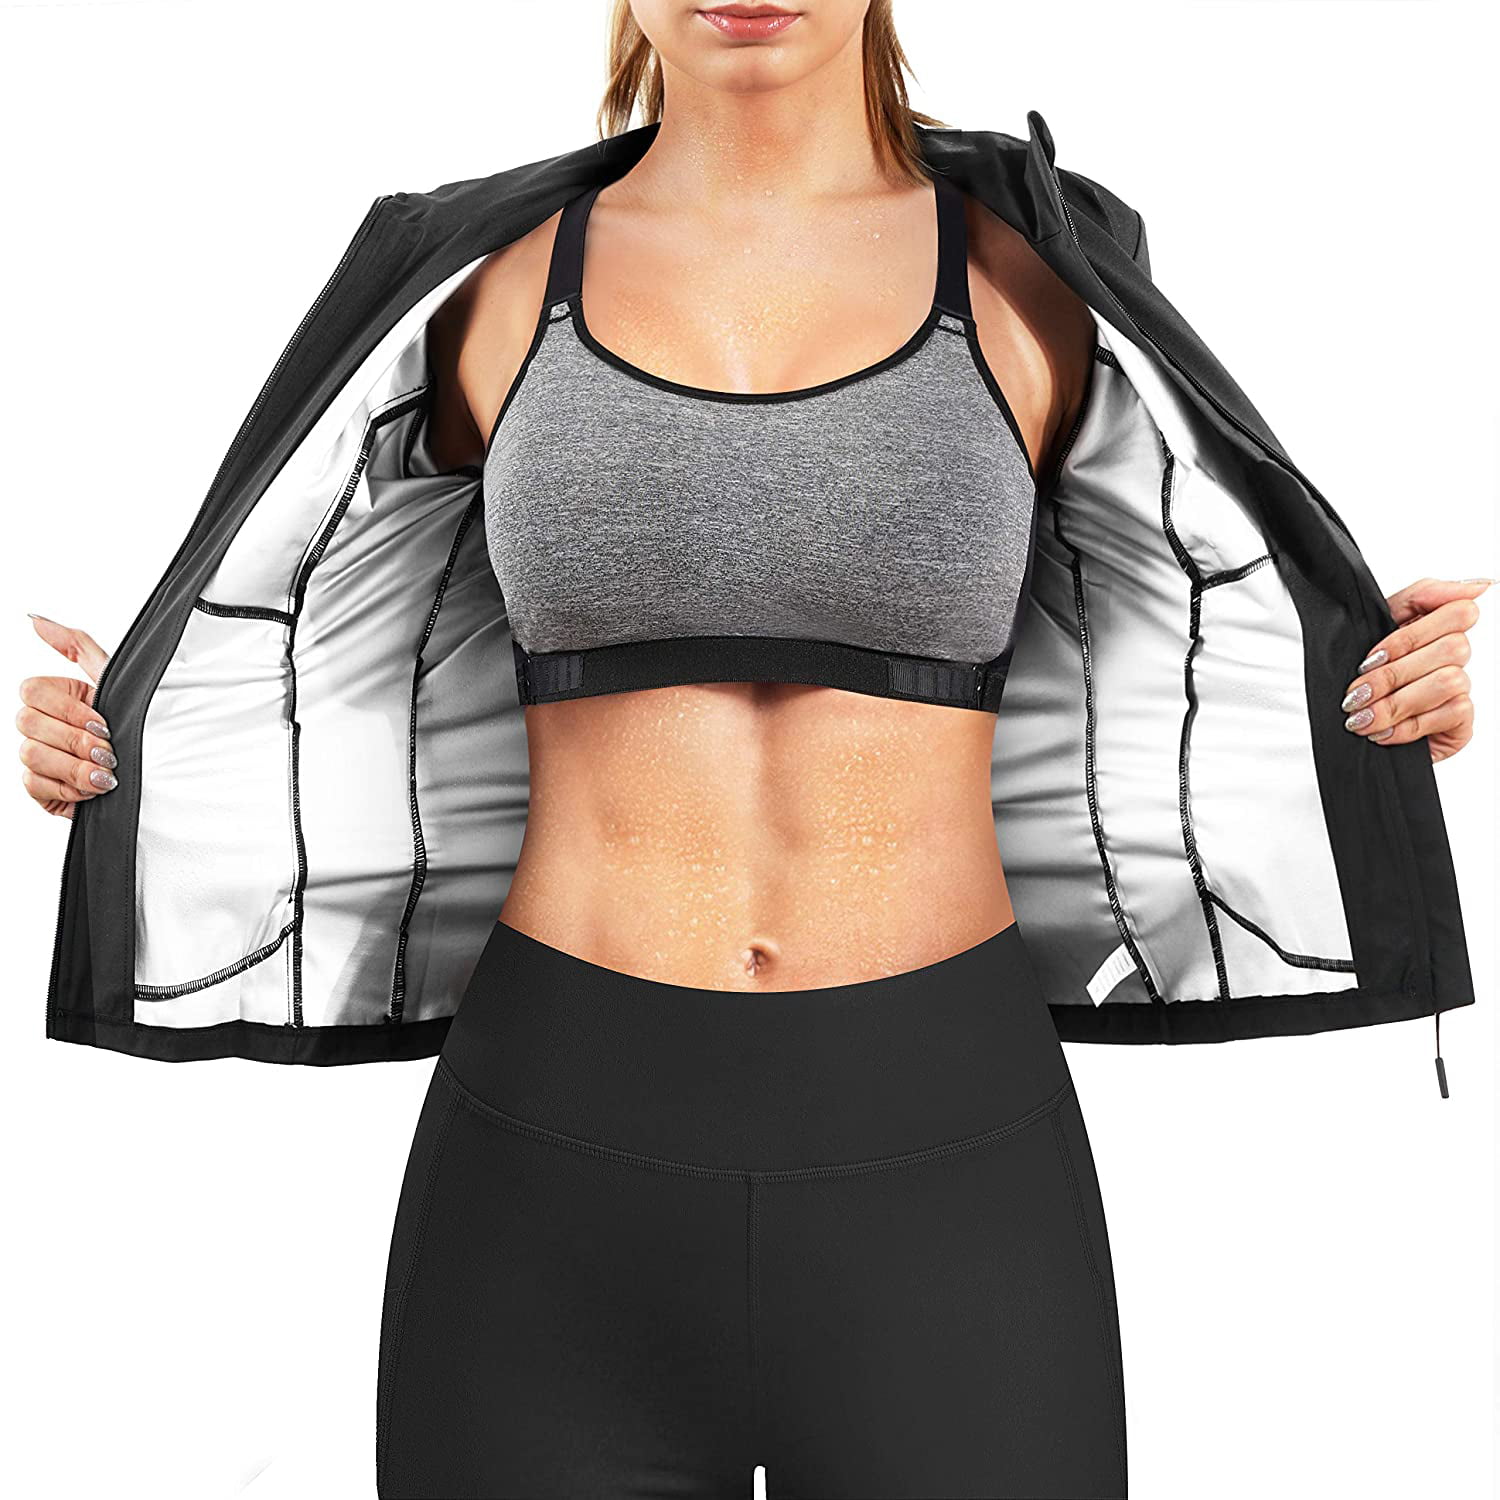 Nebility Women Waist Trainer Jacket Hot Sweat Shirt Weight Loss Sauna Suit Workout Body Shaper Fitness Top Long Sleeve 